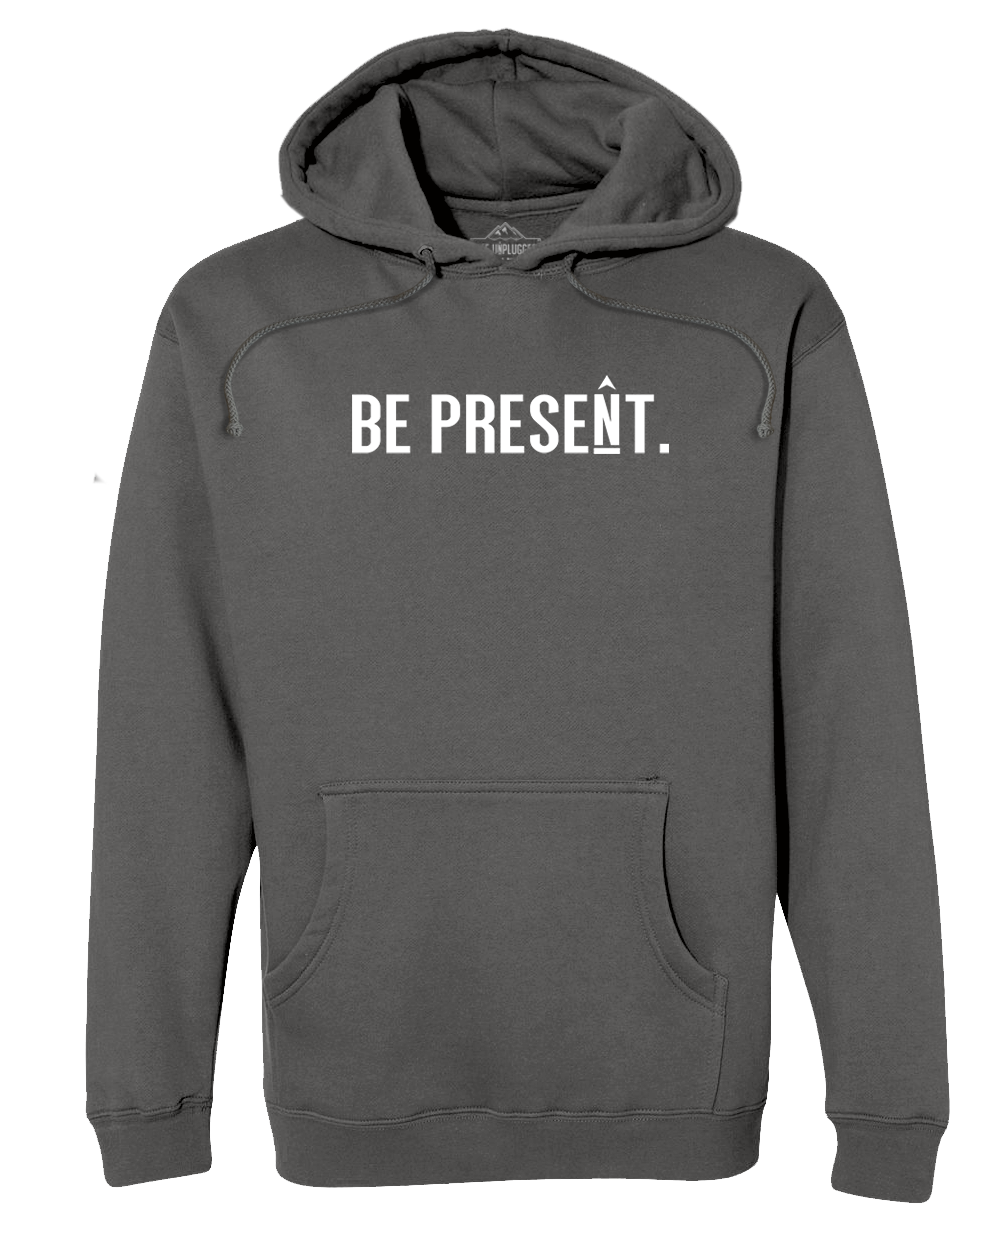 BE PRESENT. FULL CHEST Premium Heavyweight Hooded Sweatshirt